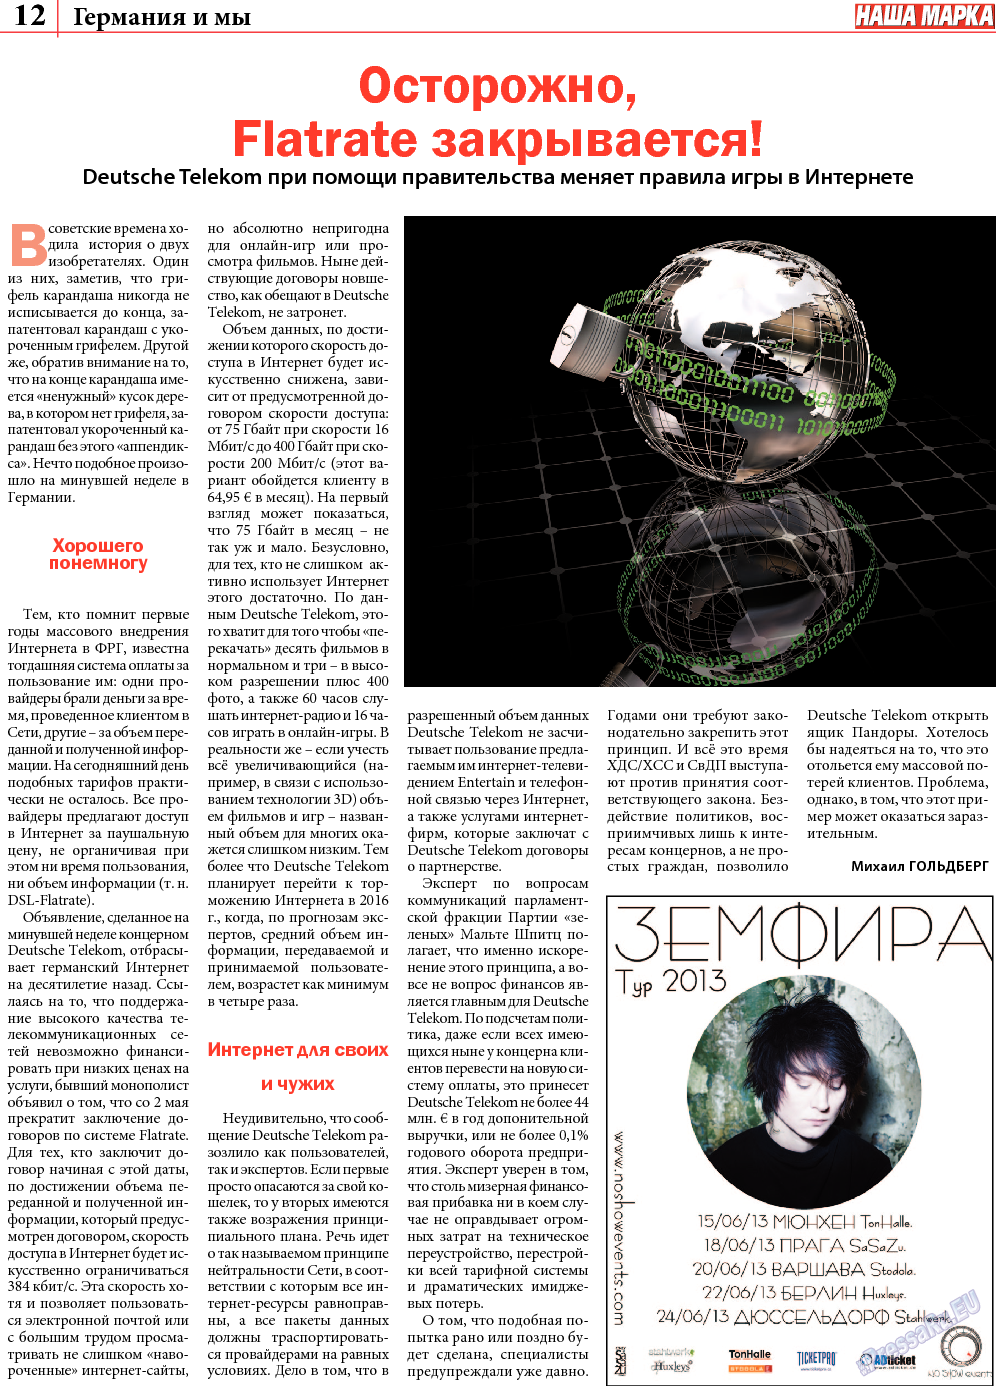 Наша марка (газета). 2013 год, номер 5, стр. 12